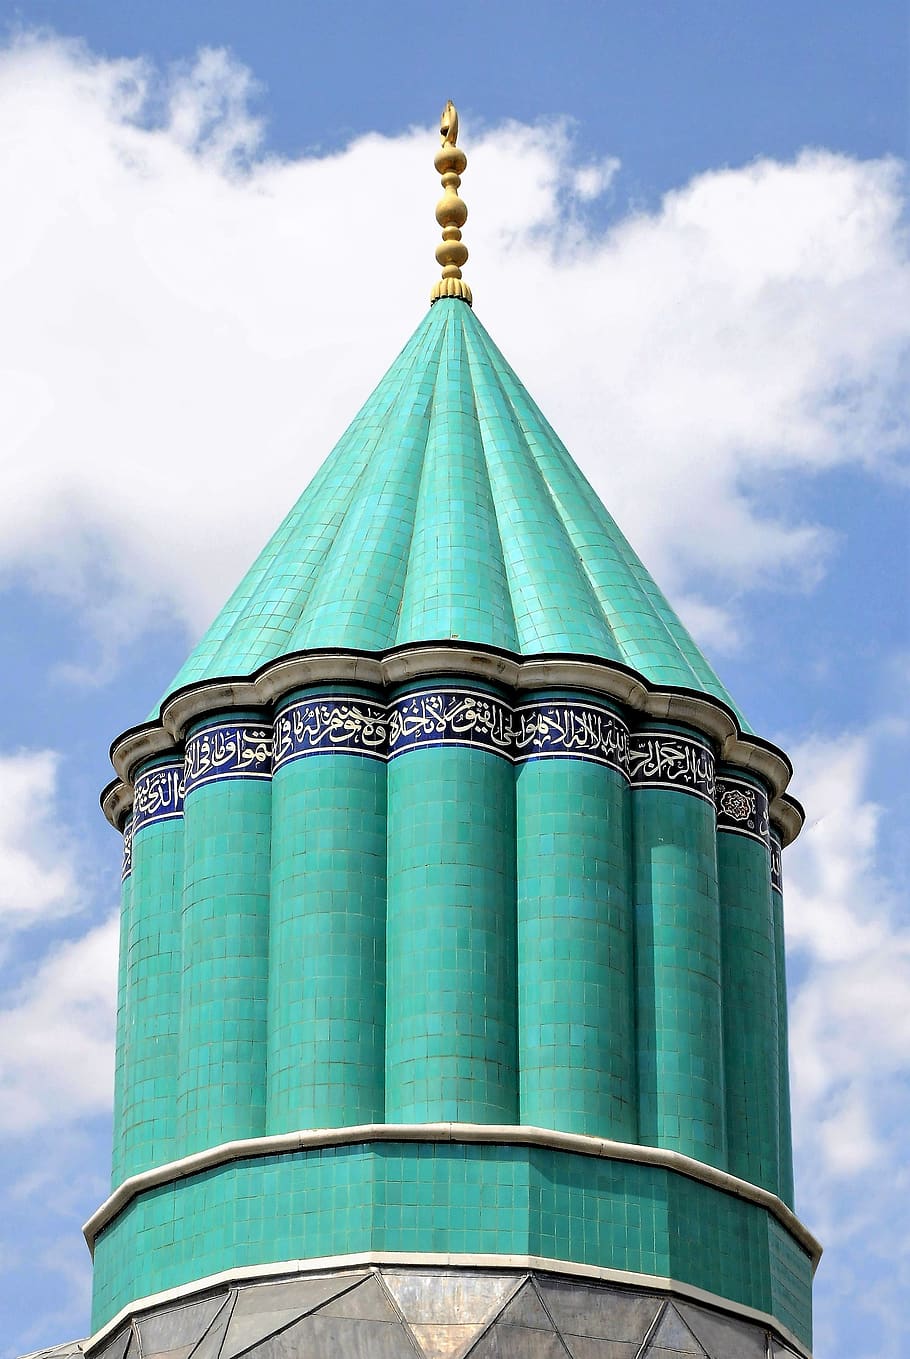 mosquet, turquia, arte, minarete, verde, ornamento, decorativo, islâmica, árabe, religiosa